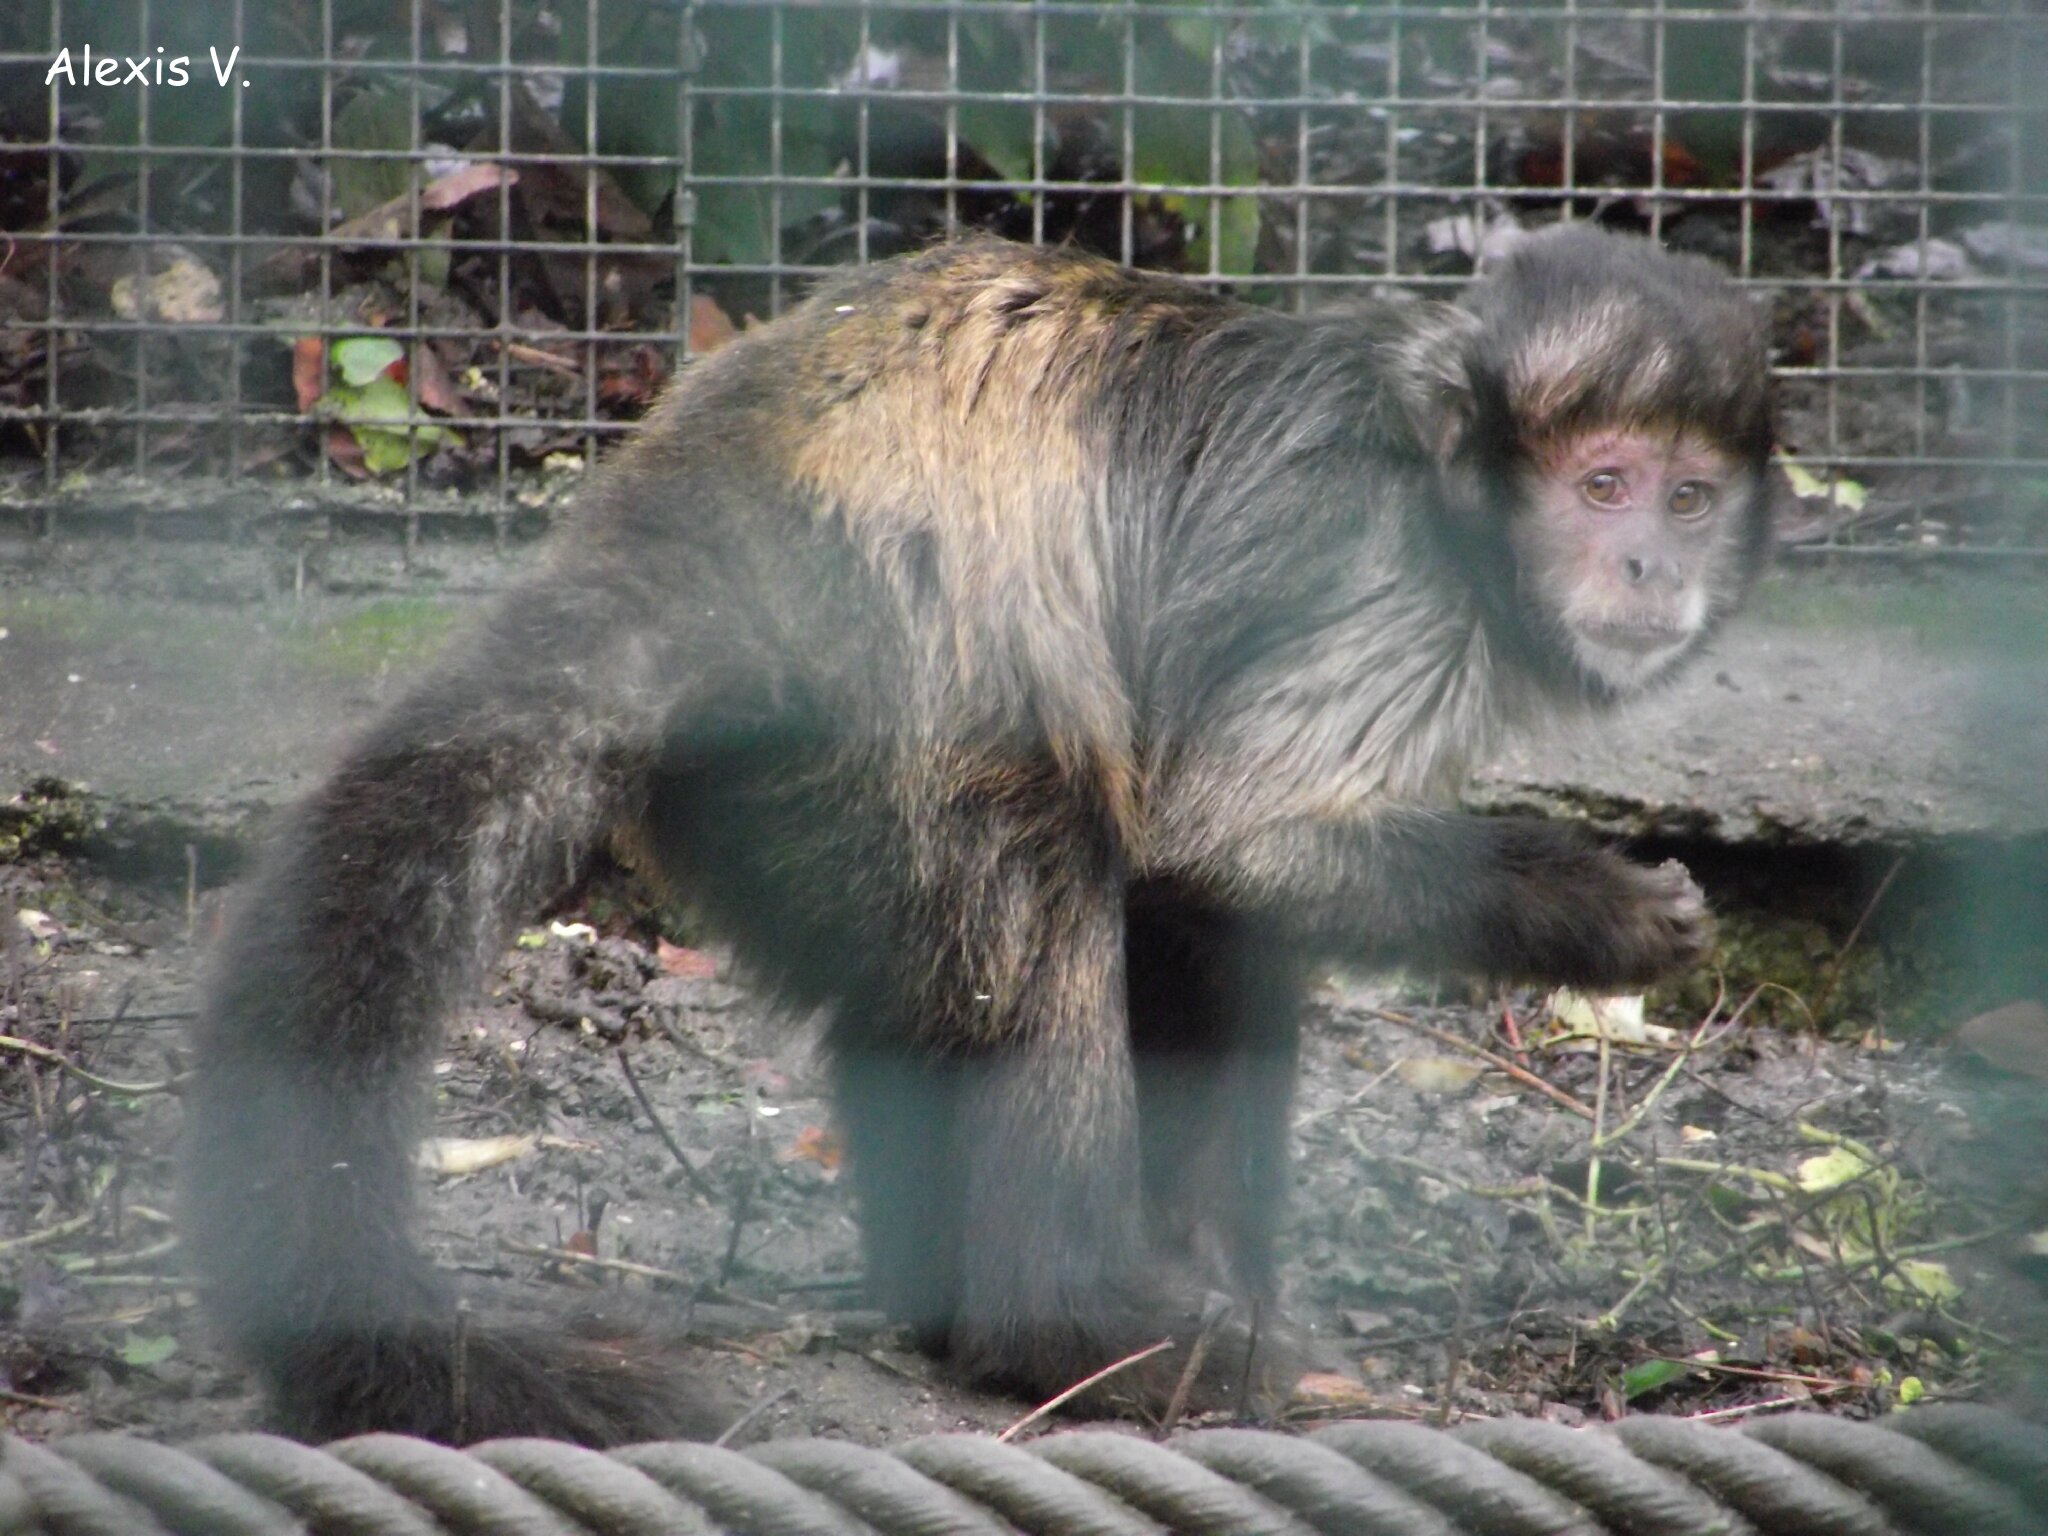 Cri d'alarme par un singe en captivité#bedo3417 #singe